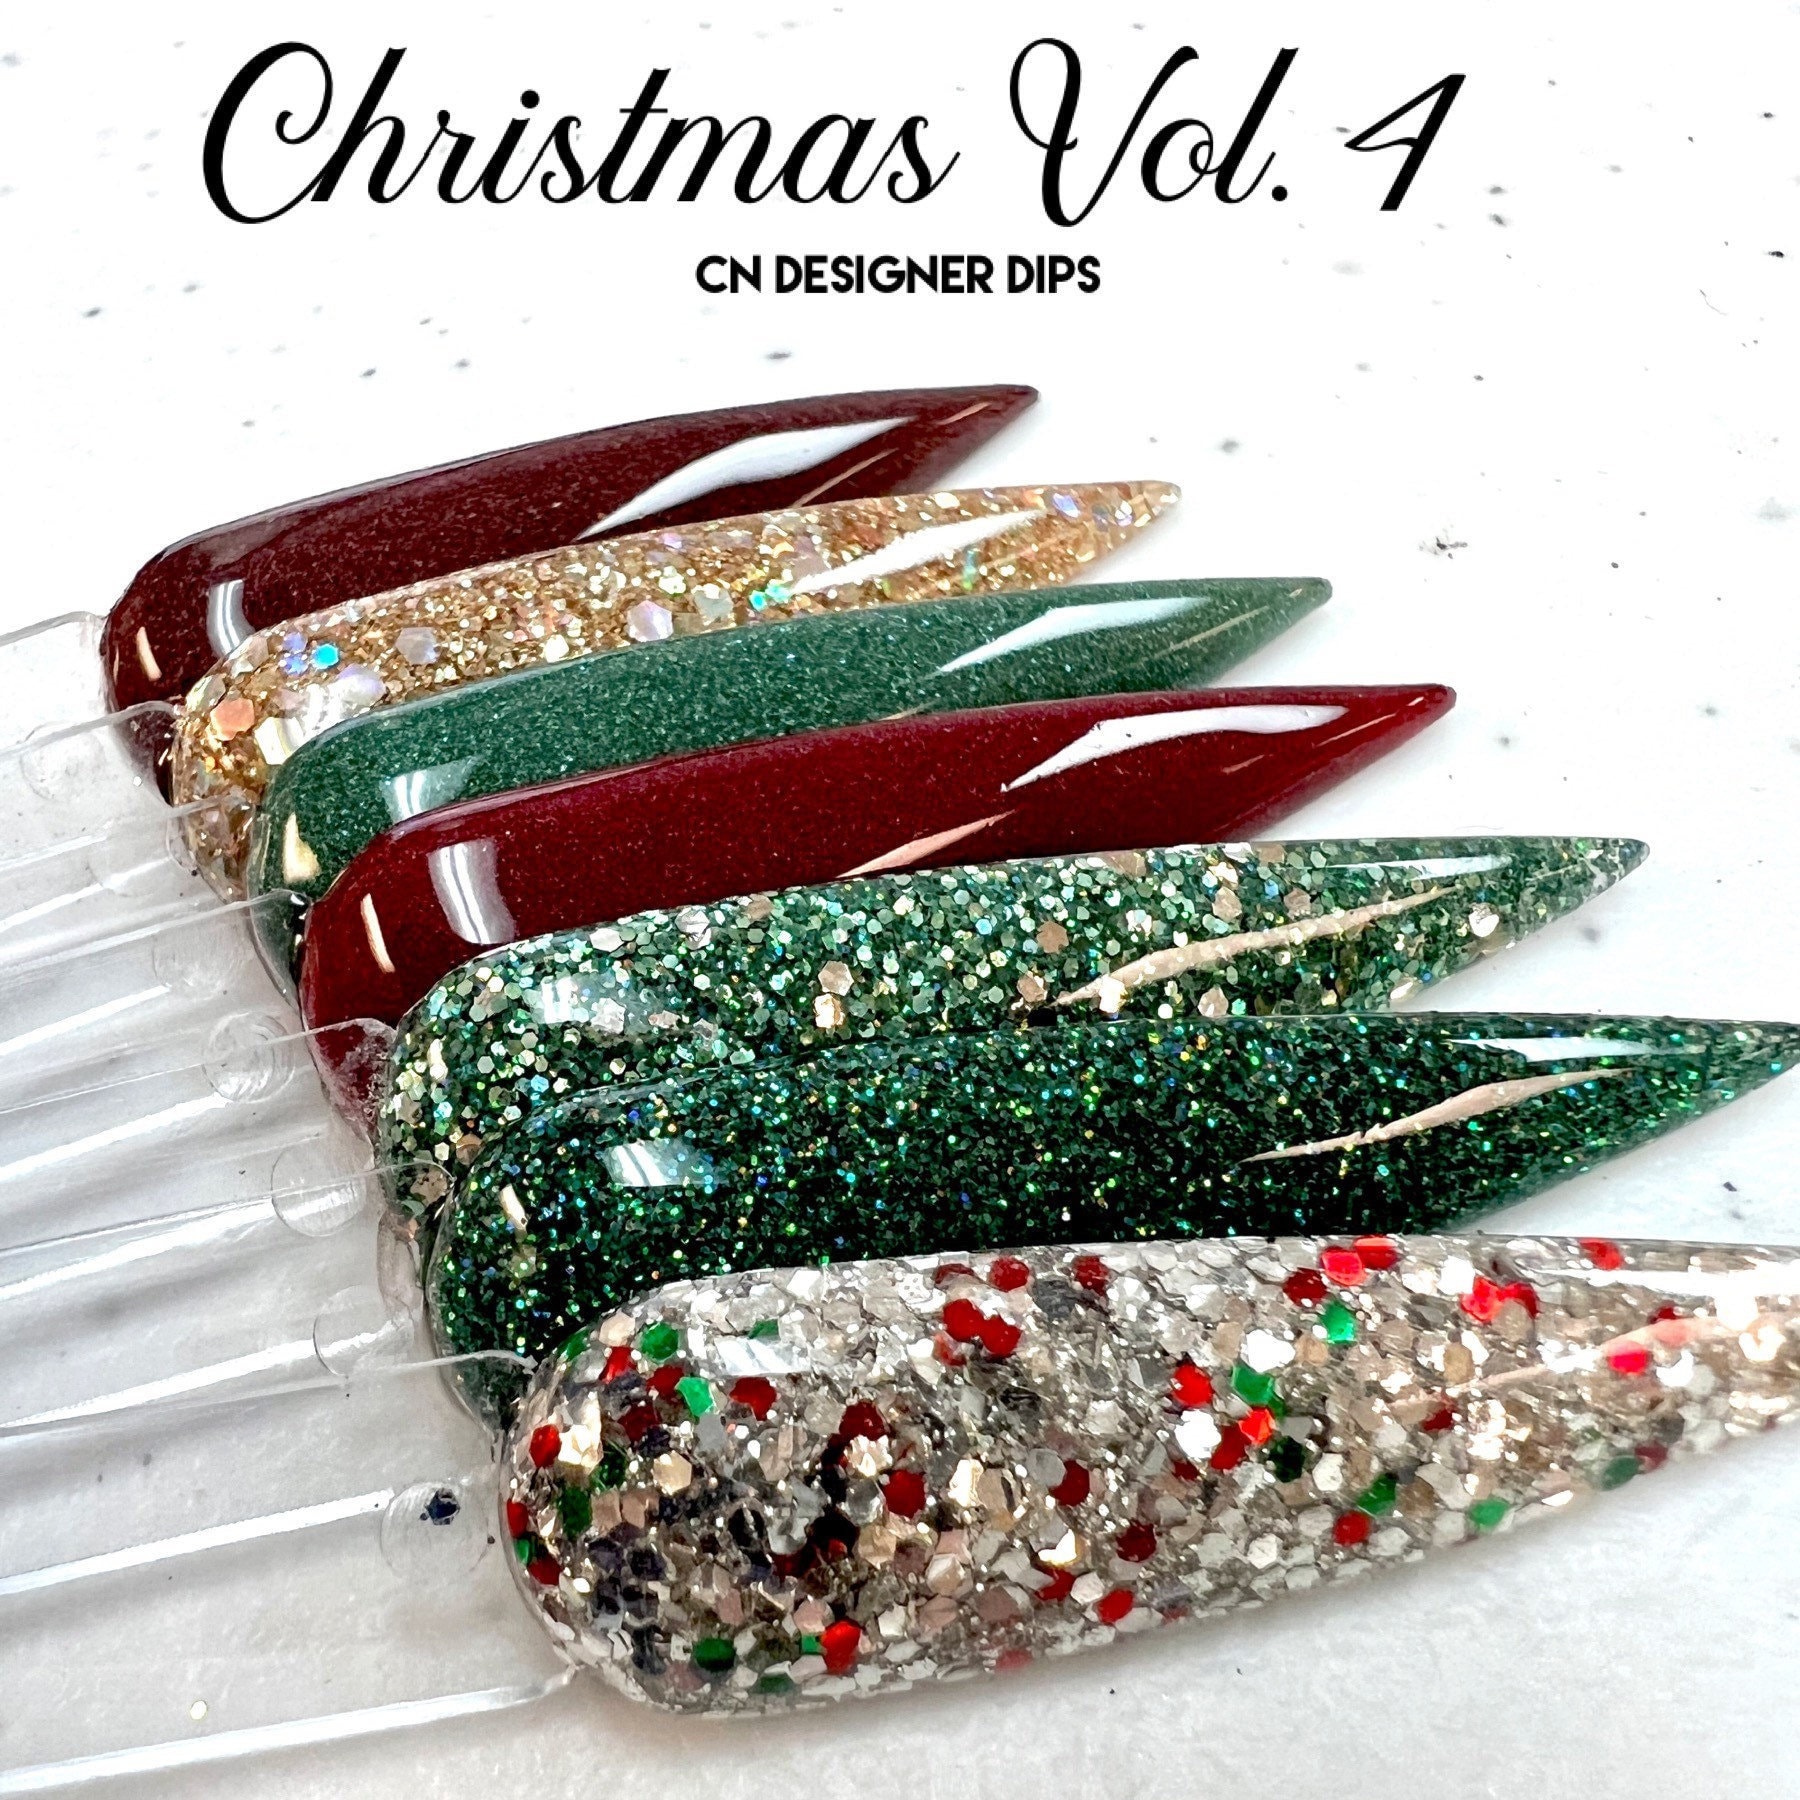 Weihnachts Vol. 4 - Dippulver, Dippulver Für Nägel, Nagel Dip, Dip Nailpulver, Acrylpulver, Acryl, Weihnachten von Etsy - CNDesignerDips